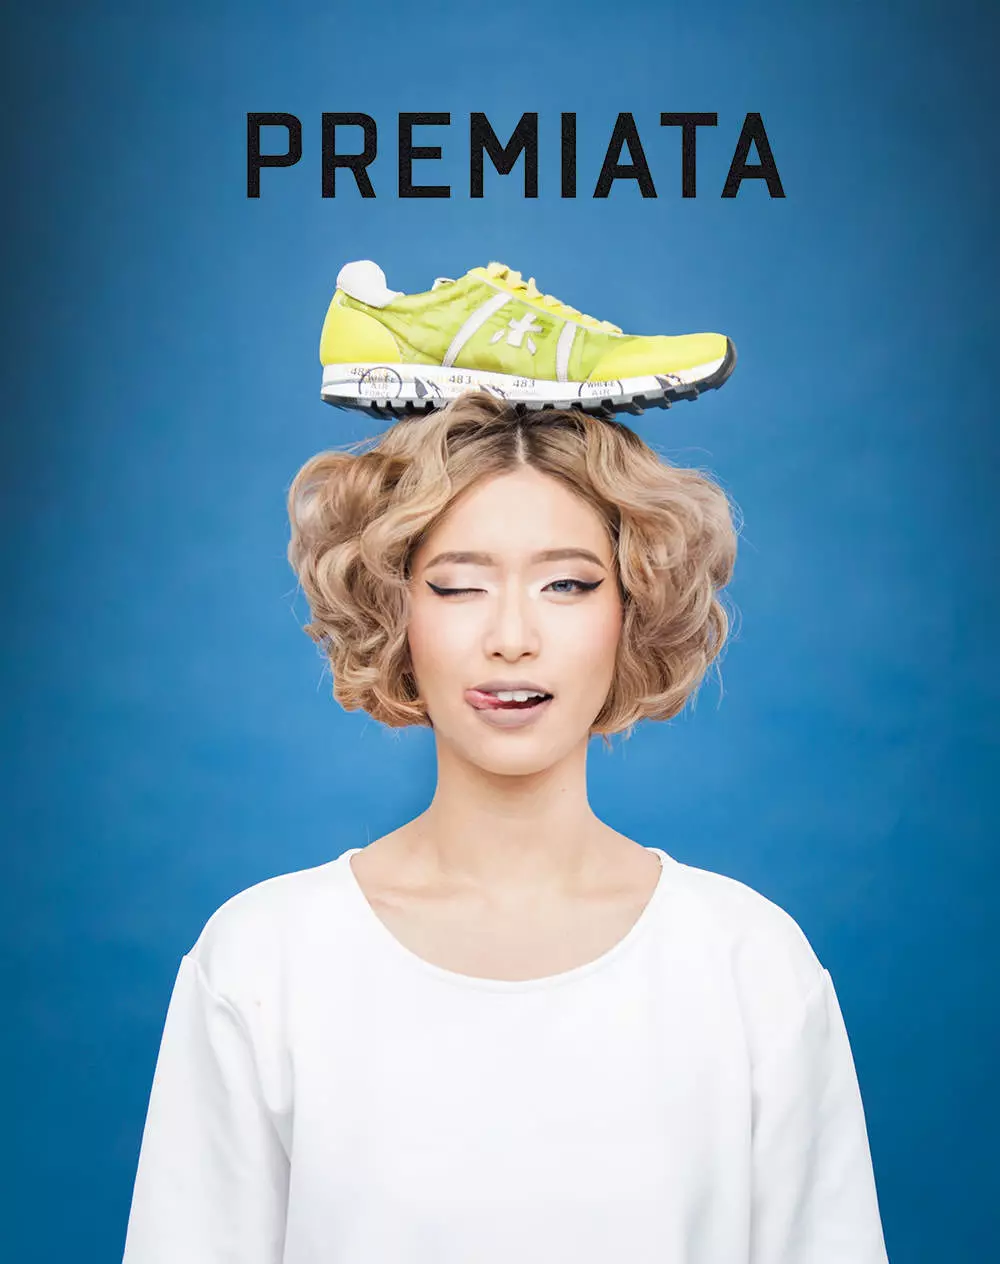 Premiata Sneakers（63写真）：女性のプレミアムモデル、イタリア語、レビュー 2016_4